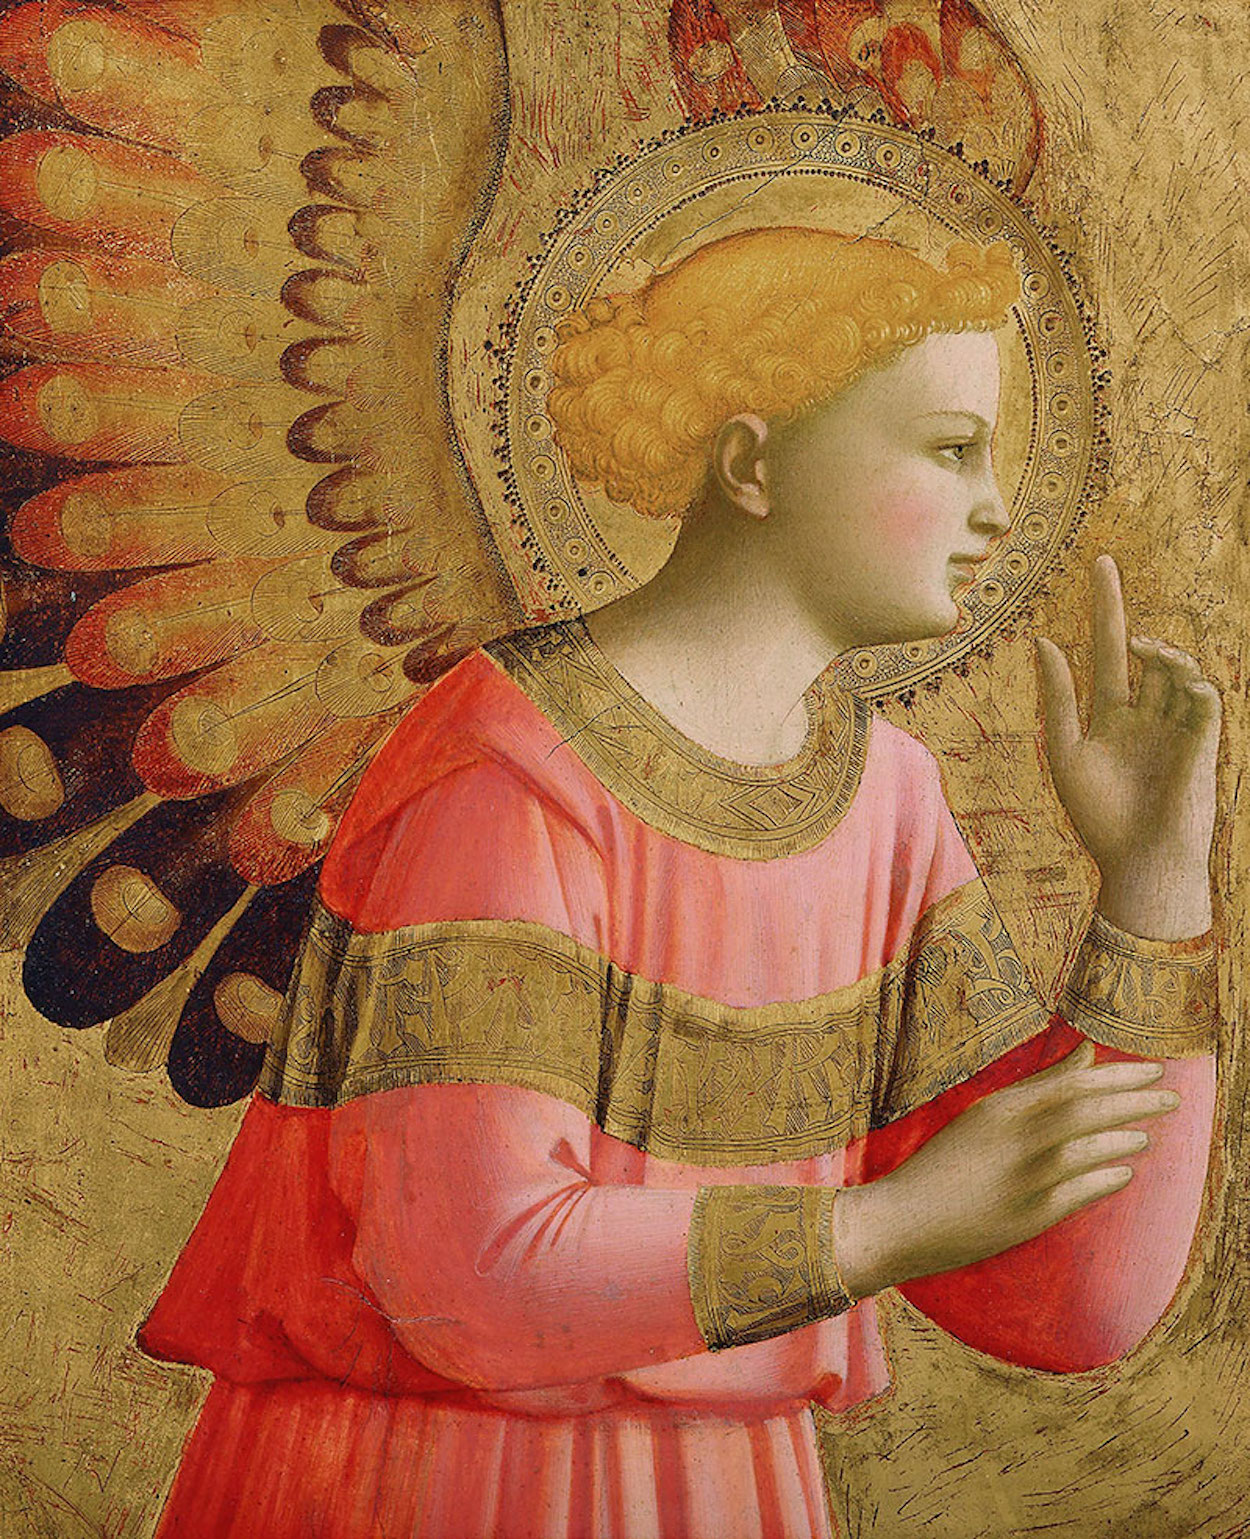 Anjo Anunciador by Fra Angelico - 1450-1455 